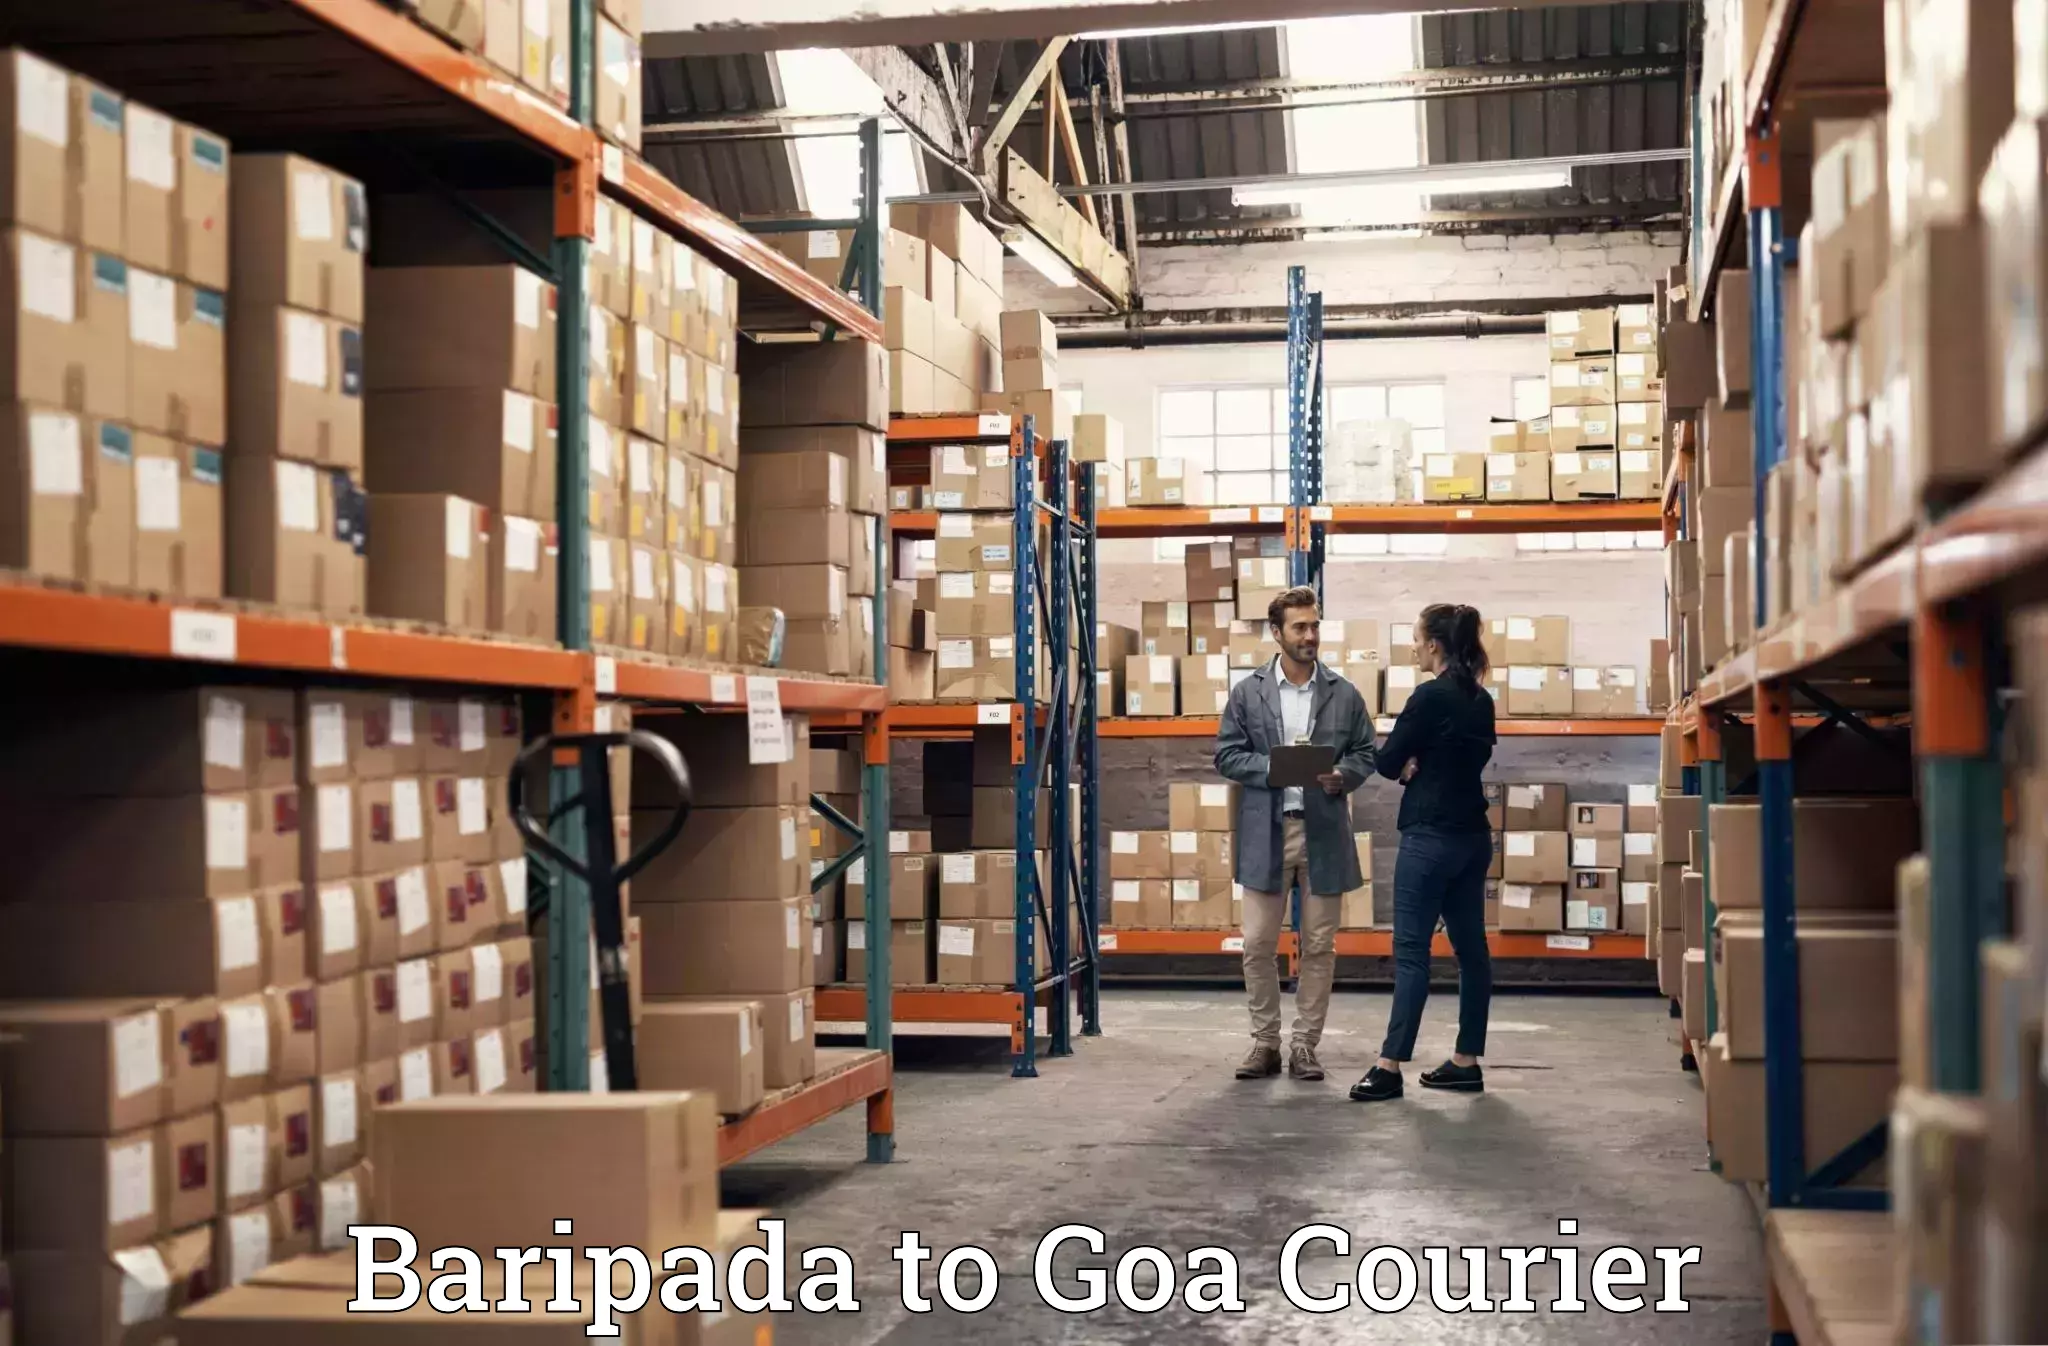 Specialized moving company Baripada to Goa